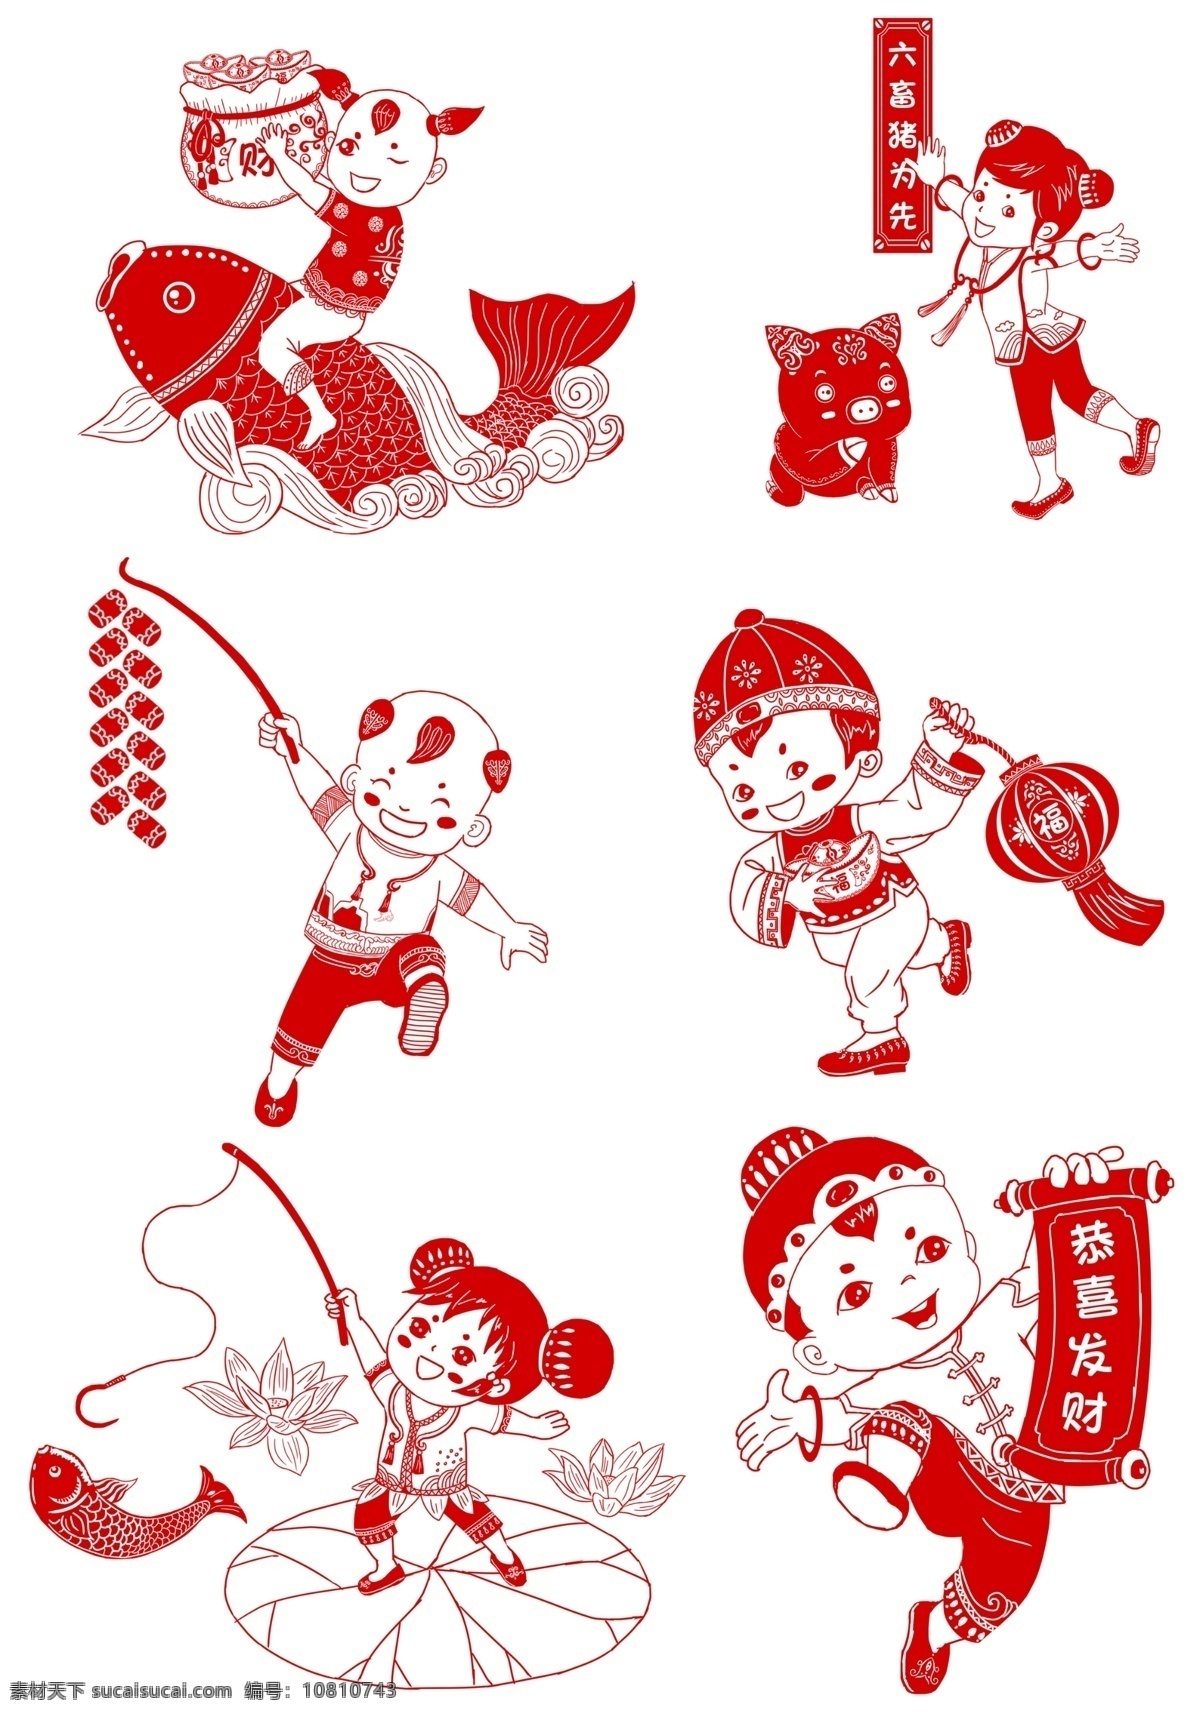 中国 风 节日 剪纸 画 动物 形象 窗花 挂件 矢量 剪纸画 艺术 展示 中国风 生肖 边框 卡通设计